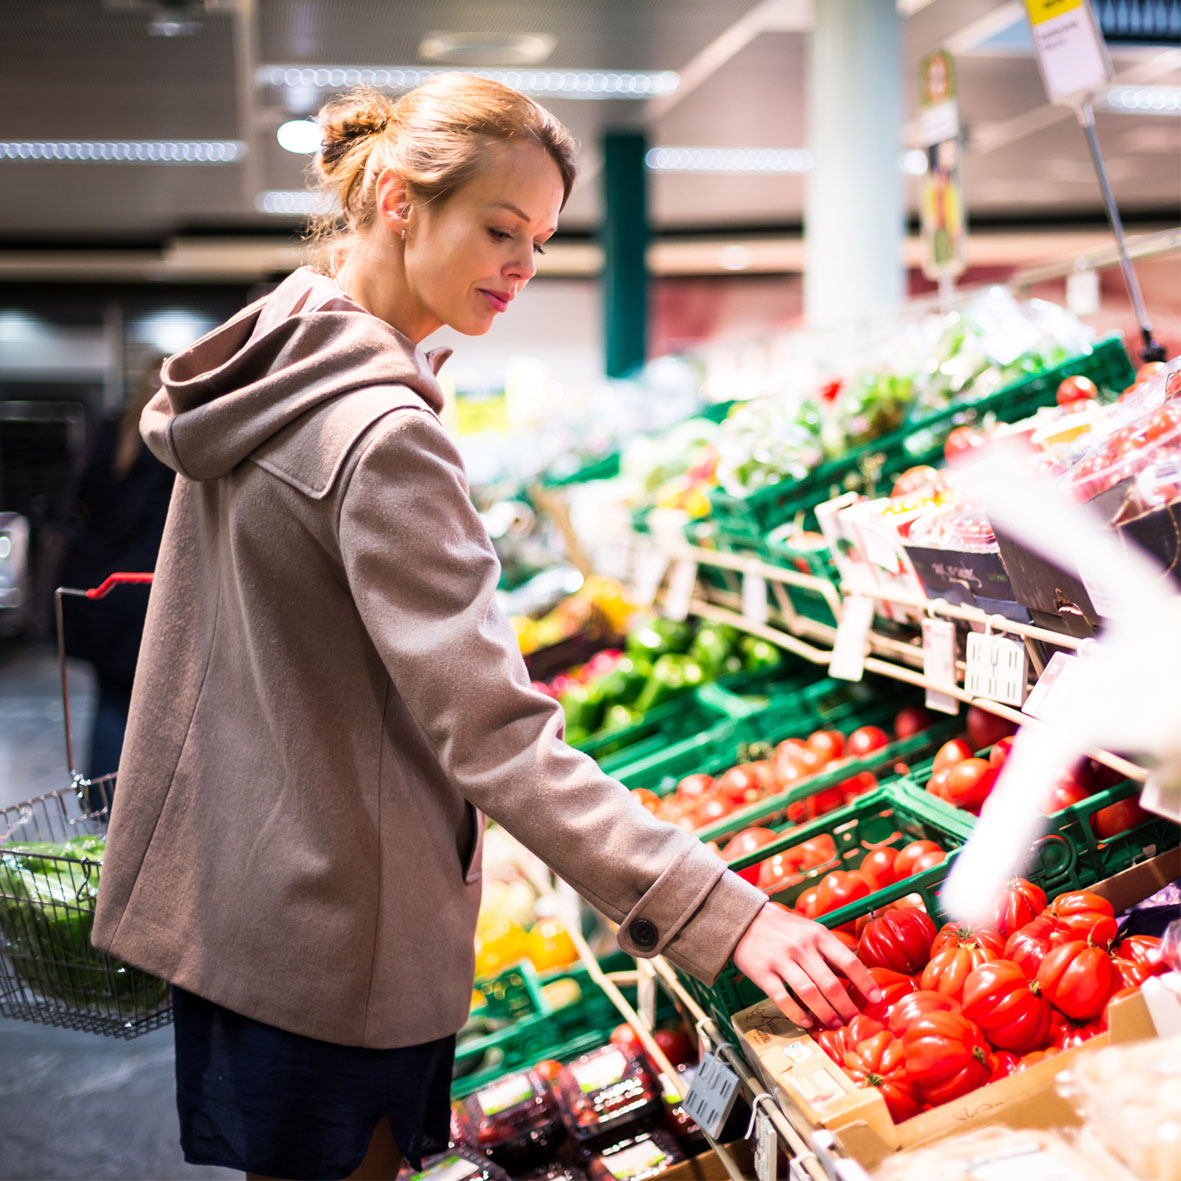 Im Supermarkt beschäftigen sich wohl die wenigsten mit rechtlichen Fragestellungen rund um den Einkauf. Und doch gibt es einiges zu beachten: Darf man beispielsweise Obst und Gemüse vor dem Kauf probieren?